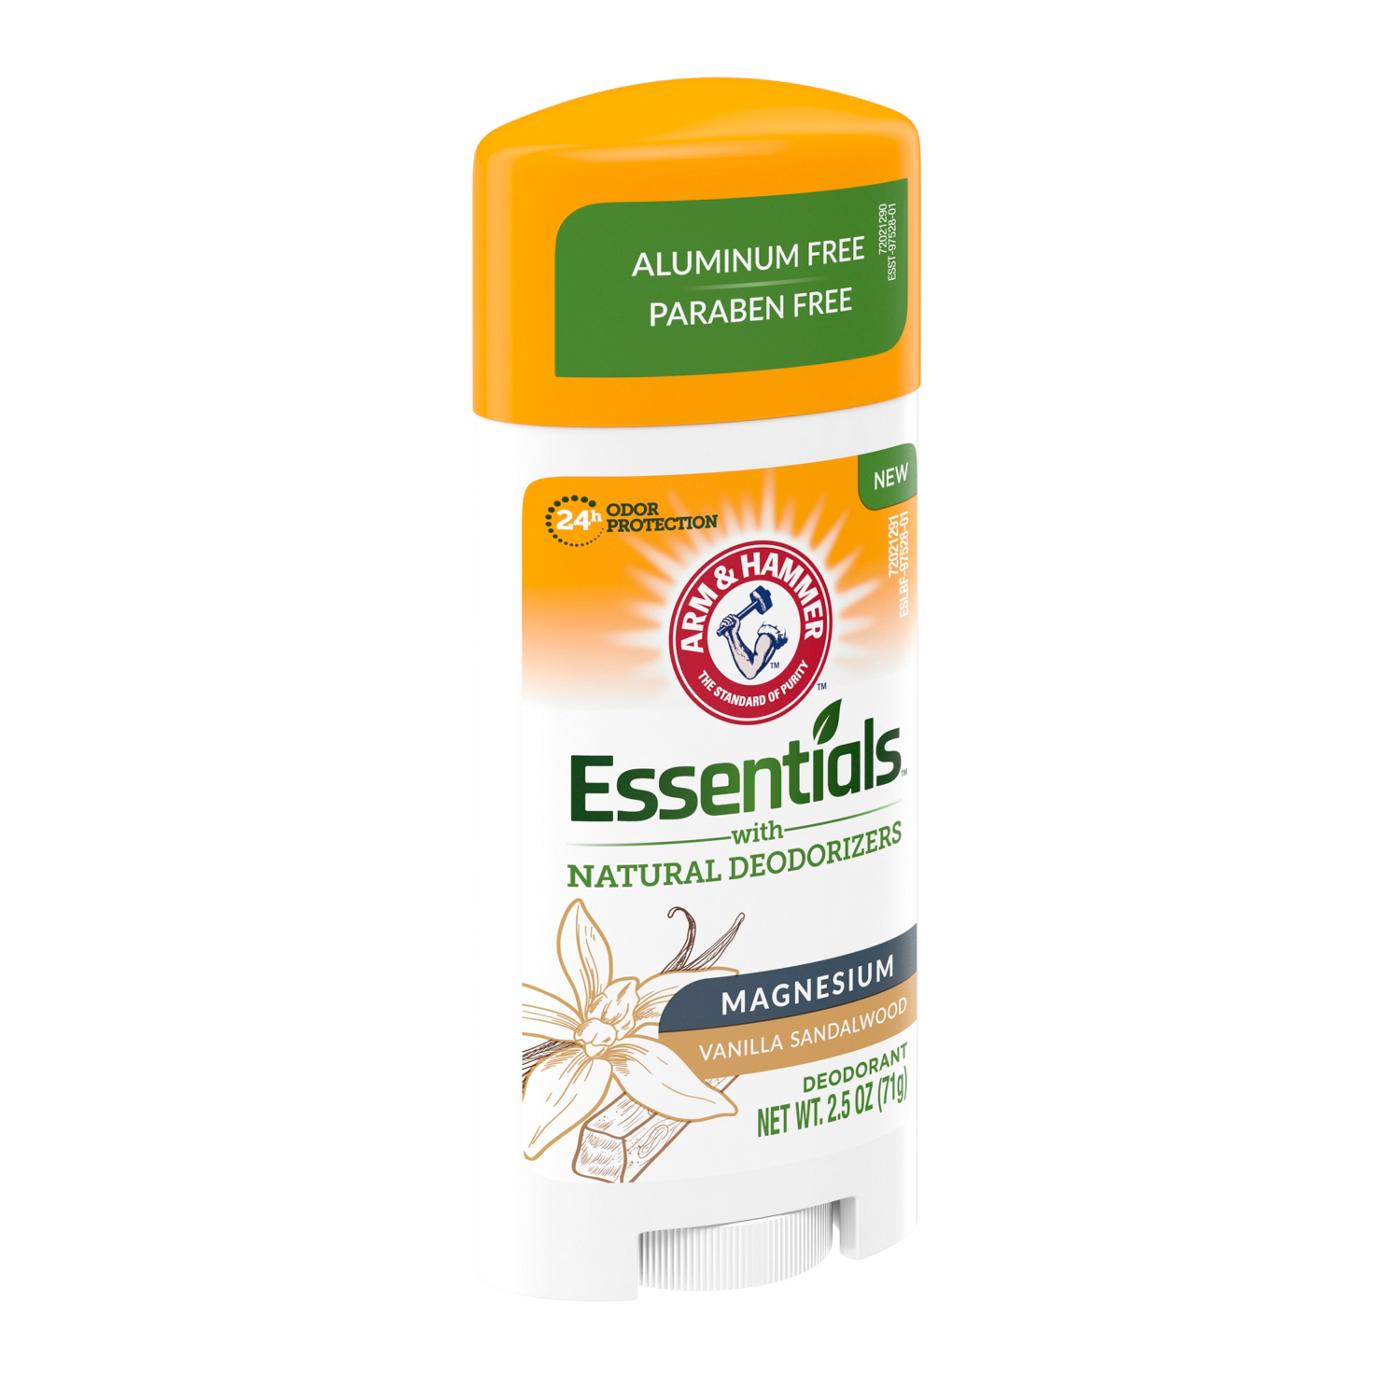 Arm & Hammer Essentials Magnesium Deodorant Vanilla Sandalwood; image 3 of 4